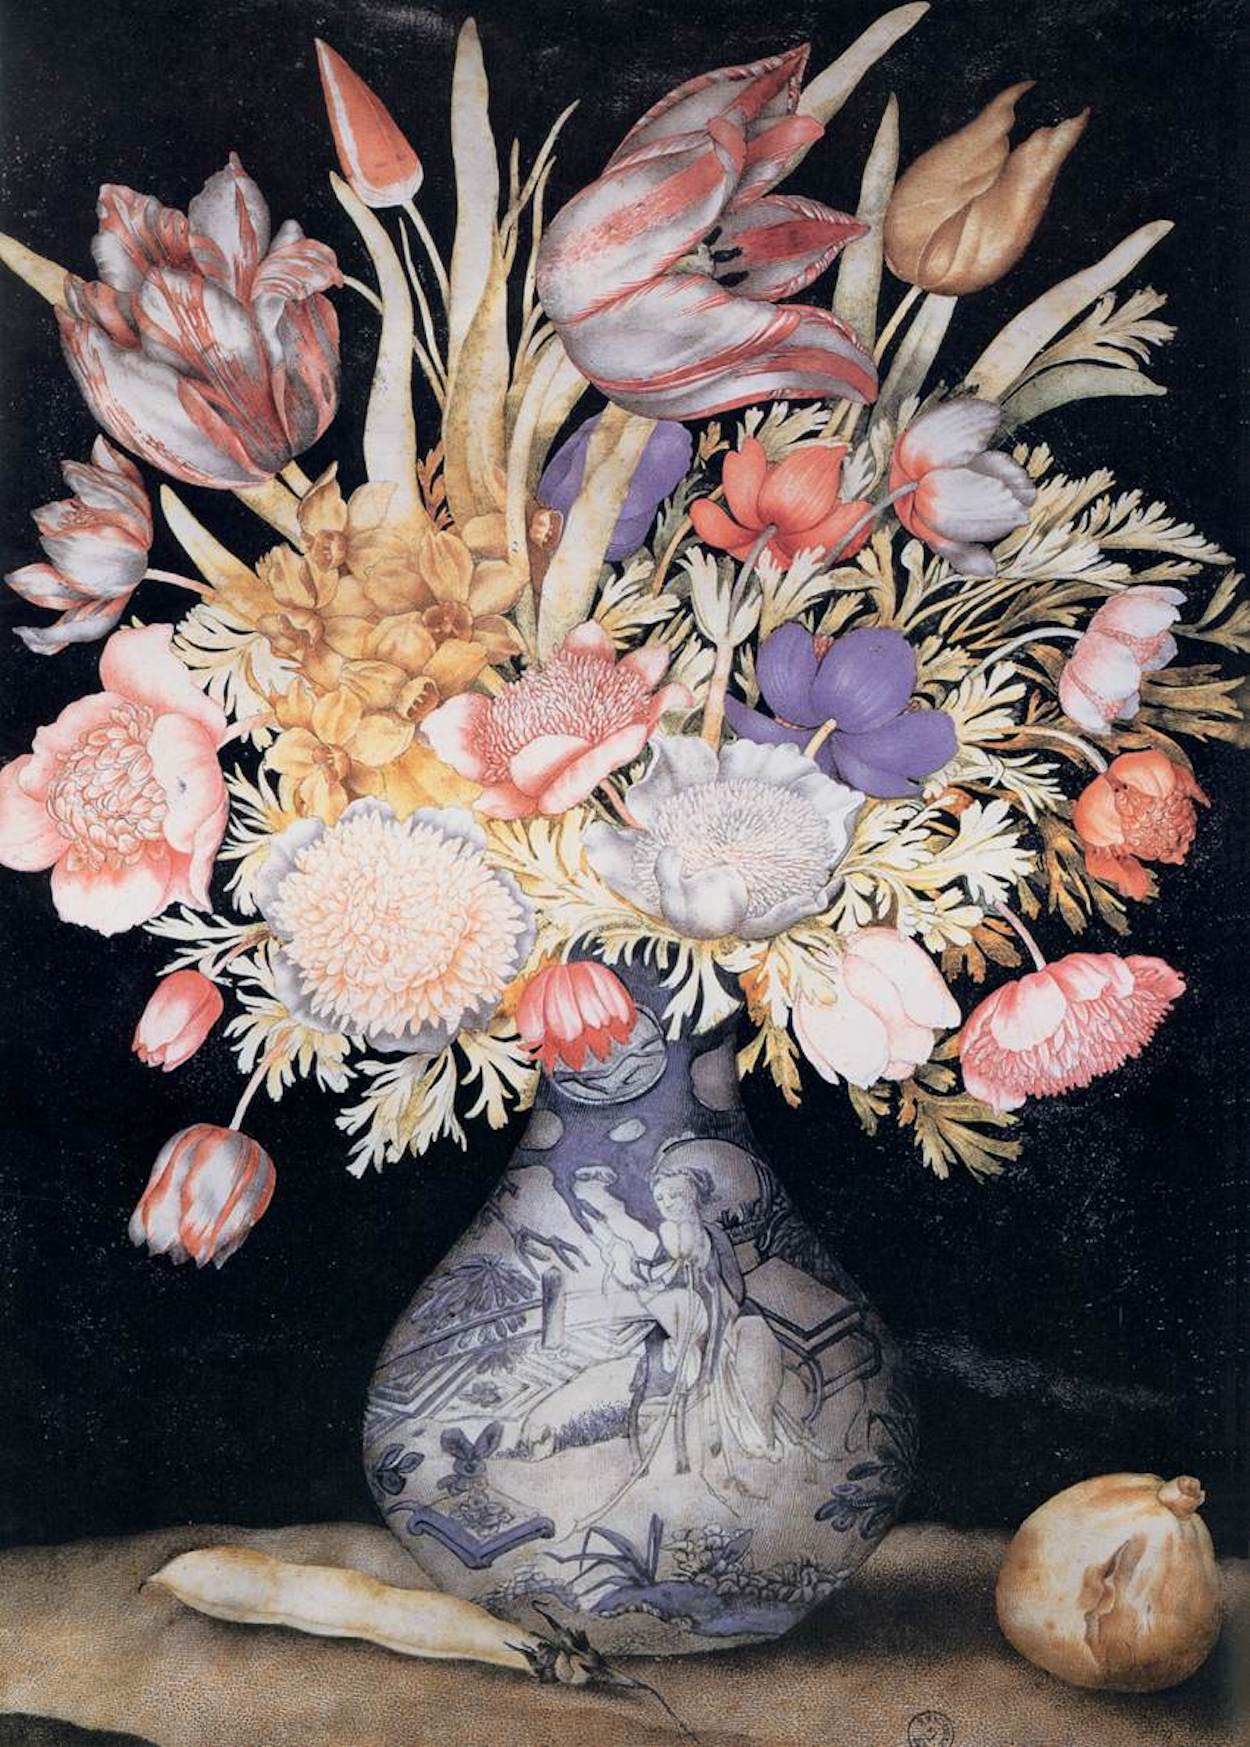 꽃과 과일이 있는 중국 화병(Chinese Vase With Flowers and Fruits) by Giovanna Garzoni - 1641–1652년경 - 51 x 36.9 cm 